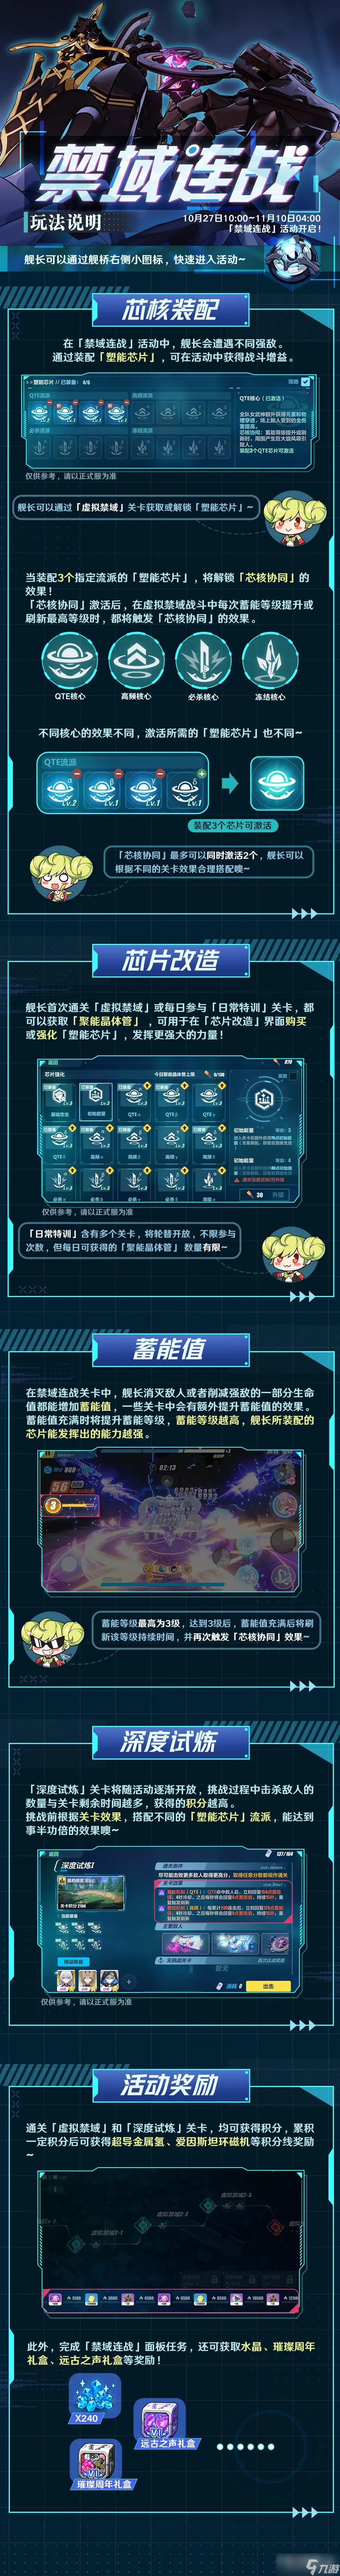 《崩坏3》禁域连战活动玩法介绍